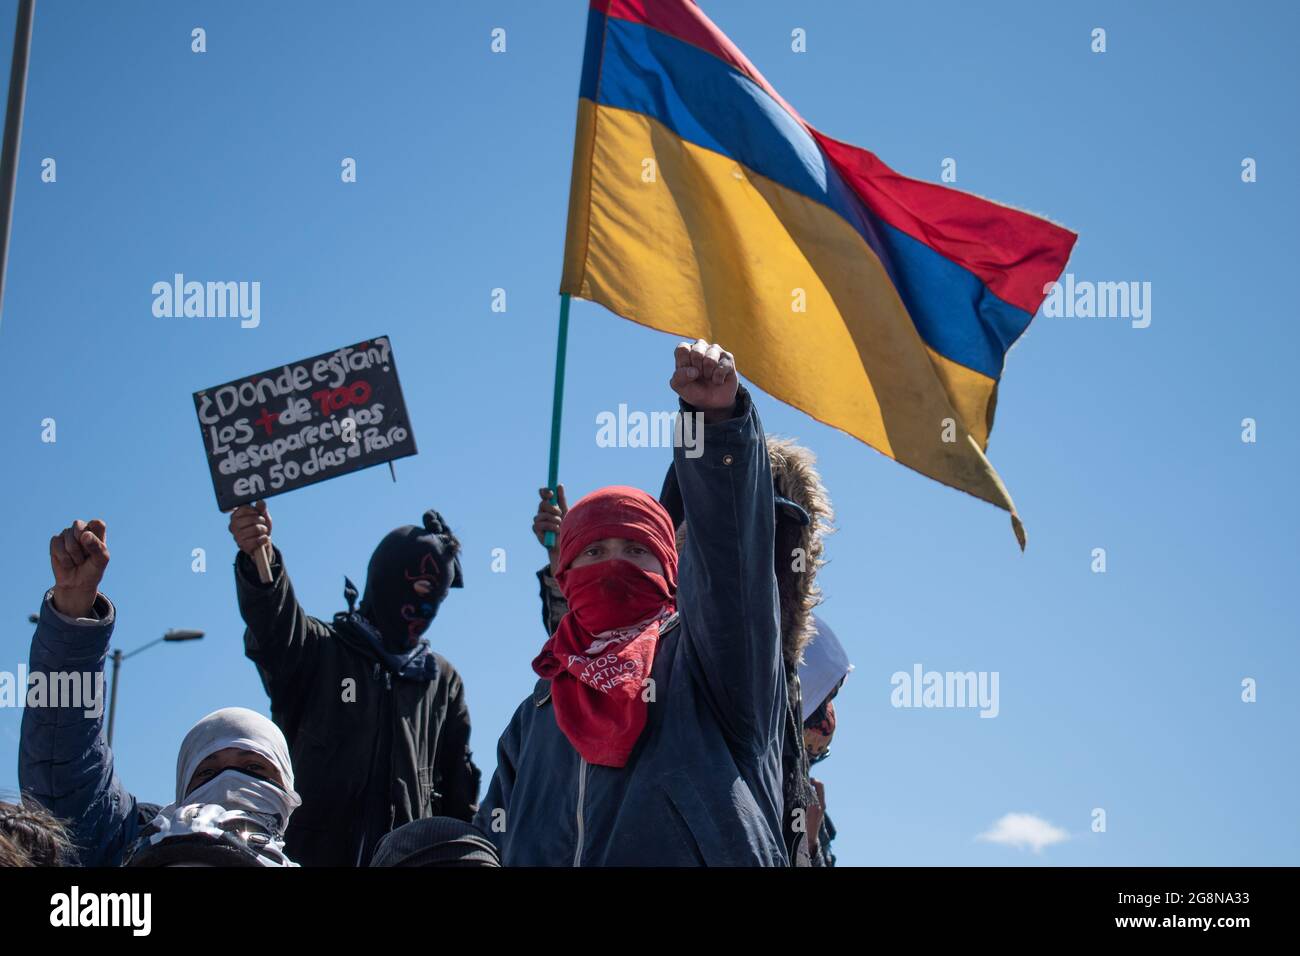 Demonstranten erheben ihre Fäuste mit umgekehrter kolumbianischer Flagge während eines neuen Tages von regierungsfeindlichen Protesten während der Feier der Unabhängigkeit Kolumbiens von spanien im Jahr 211, Proteste, die nach einer Intervention der kolumbianischen Bereitschaftspolizei ESMAD am 20. Juli 2021 in Bogota, Kolumbien, zu Zusammenstößen in verschiedenen Städten geführt wurden. Stockfoto